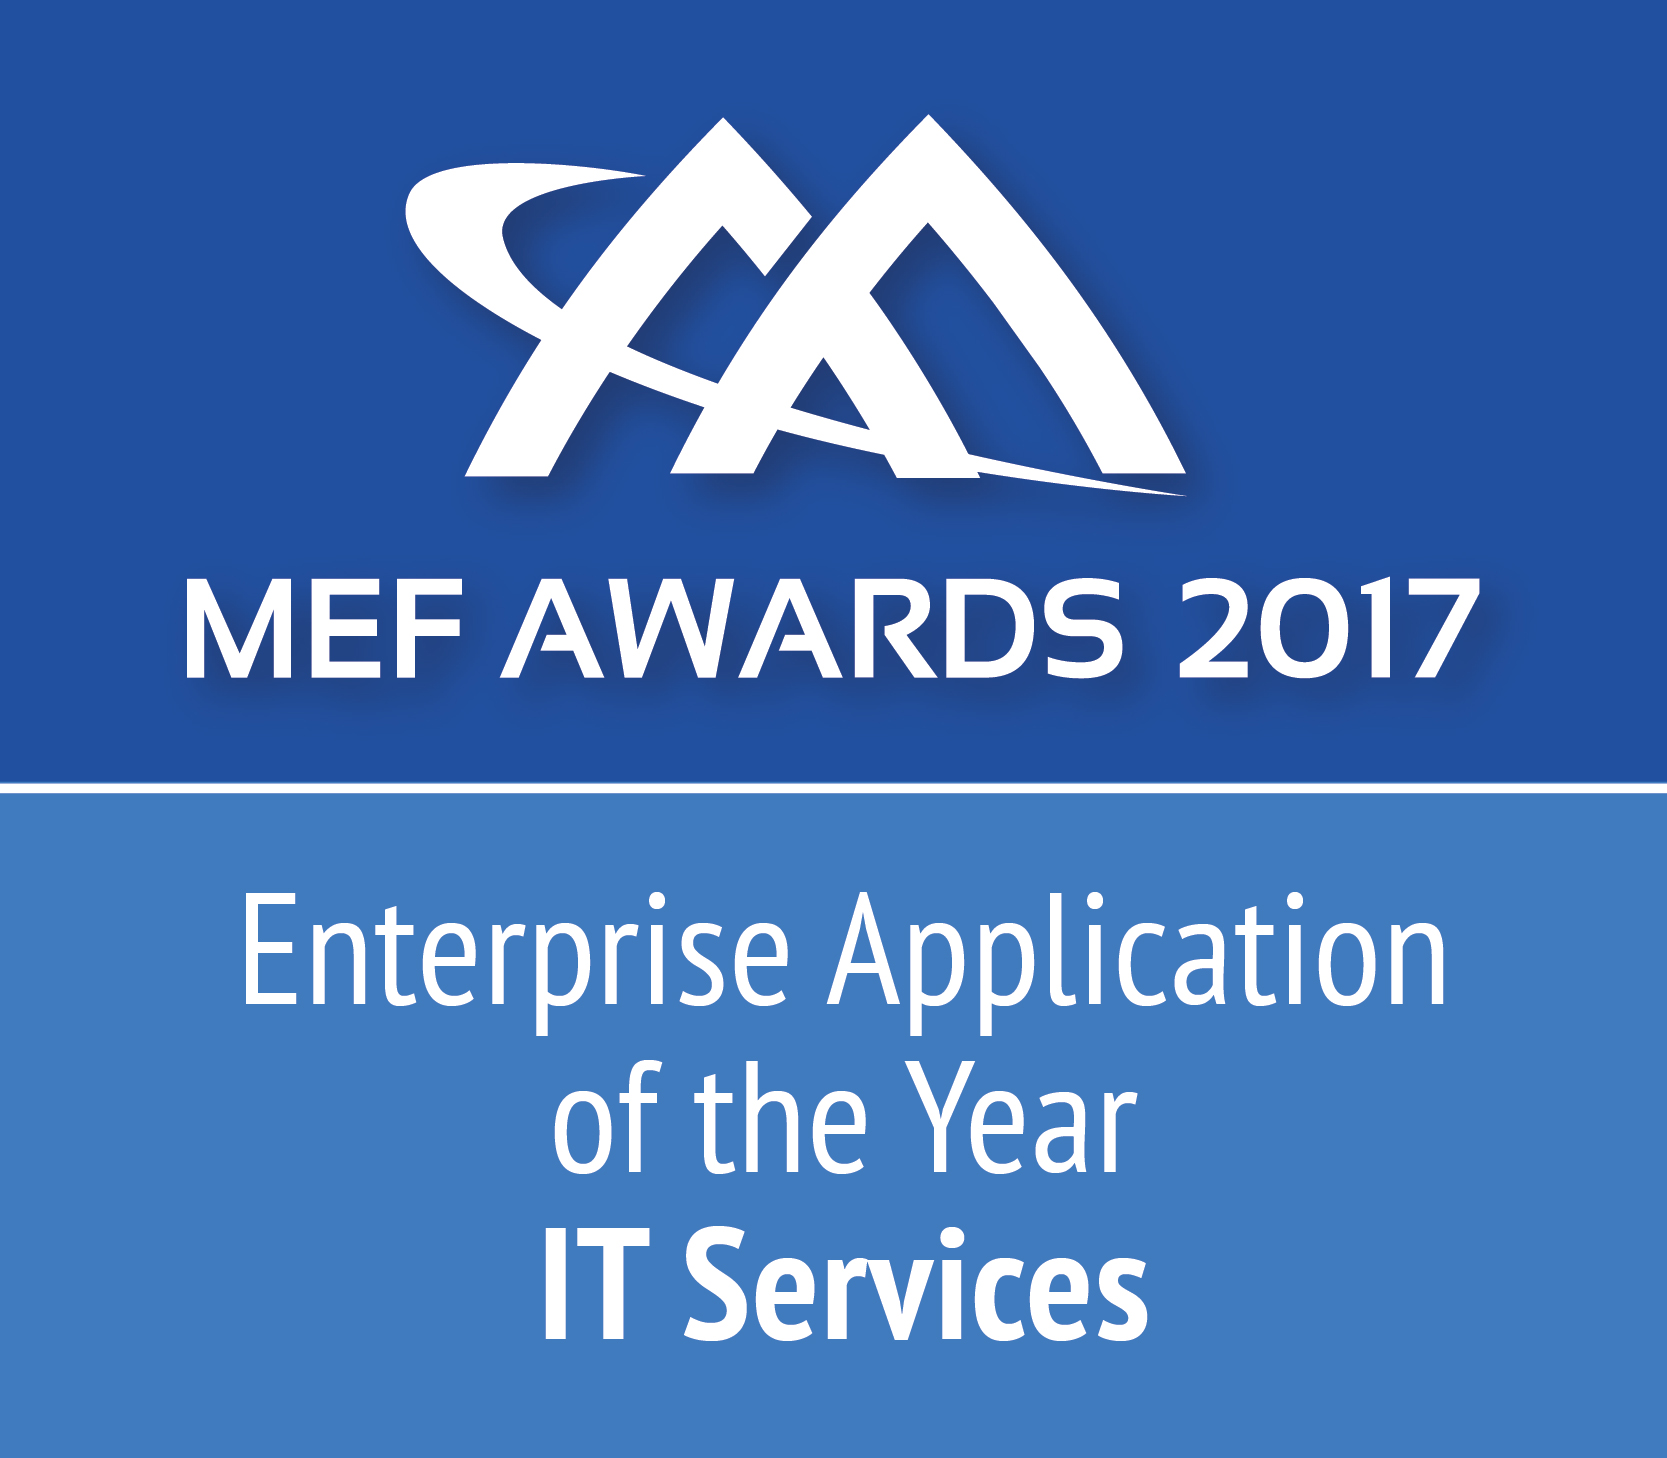 MEFAward2017_EnterpriseAppAwards_IT-Services_r1